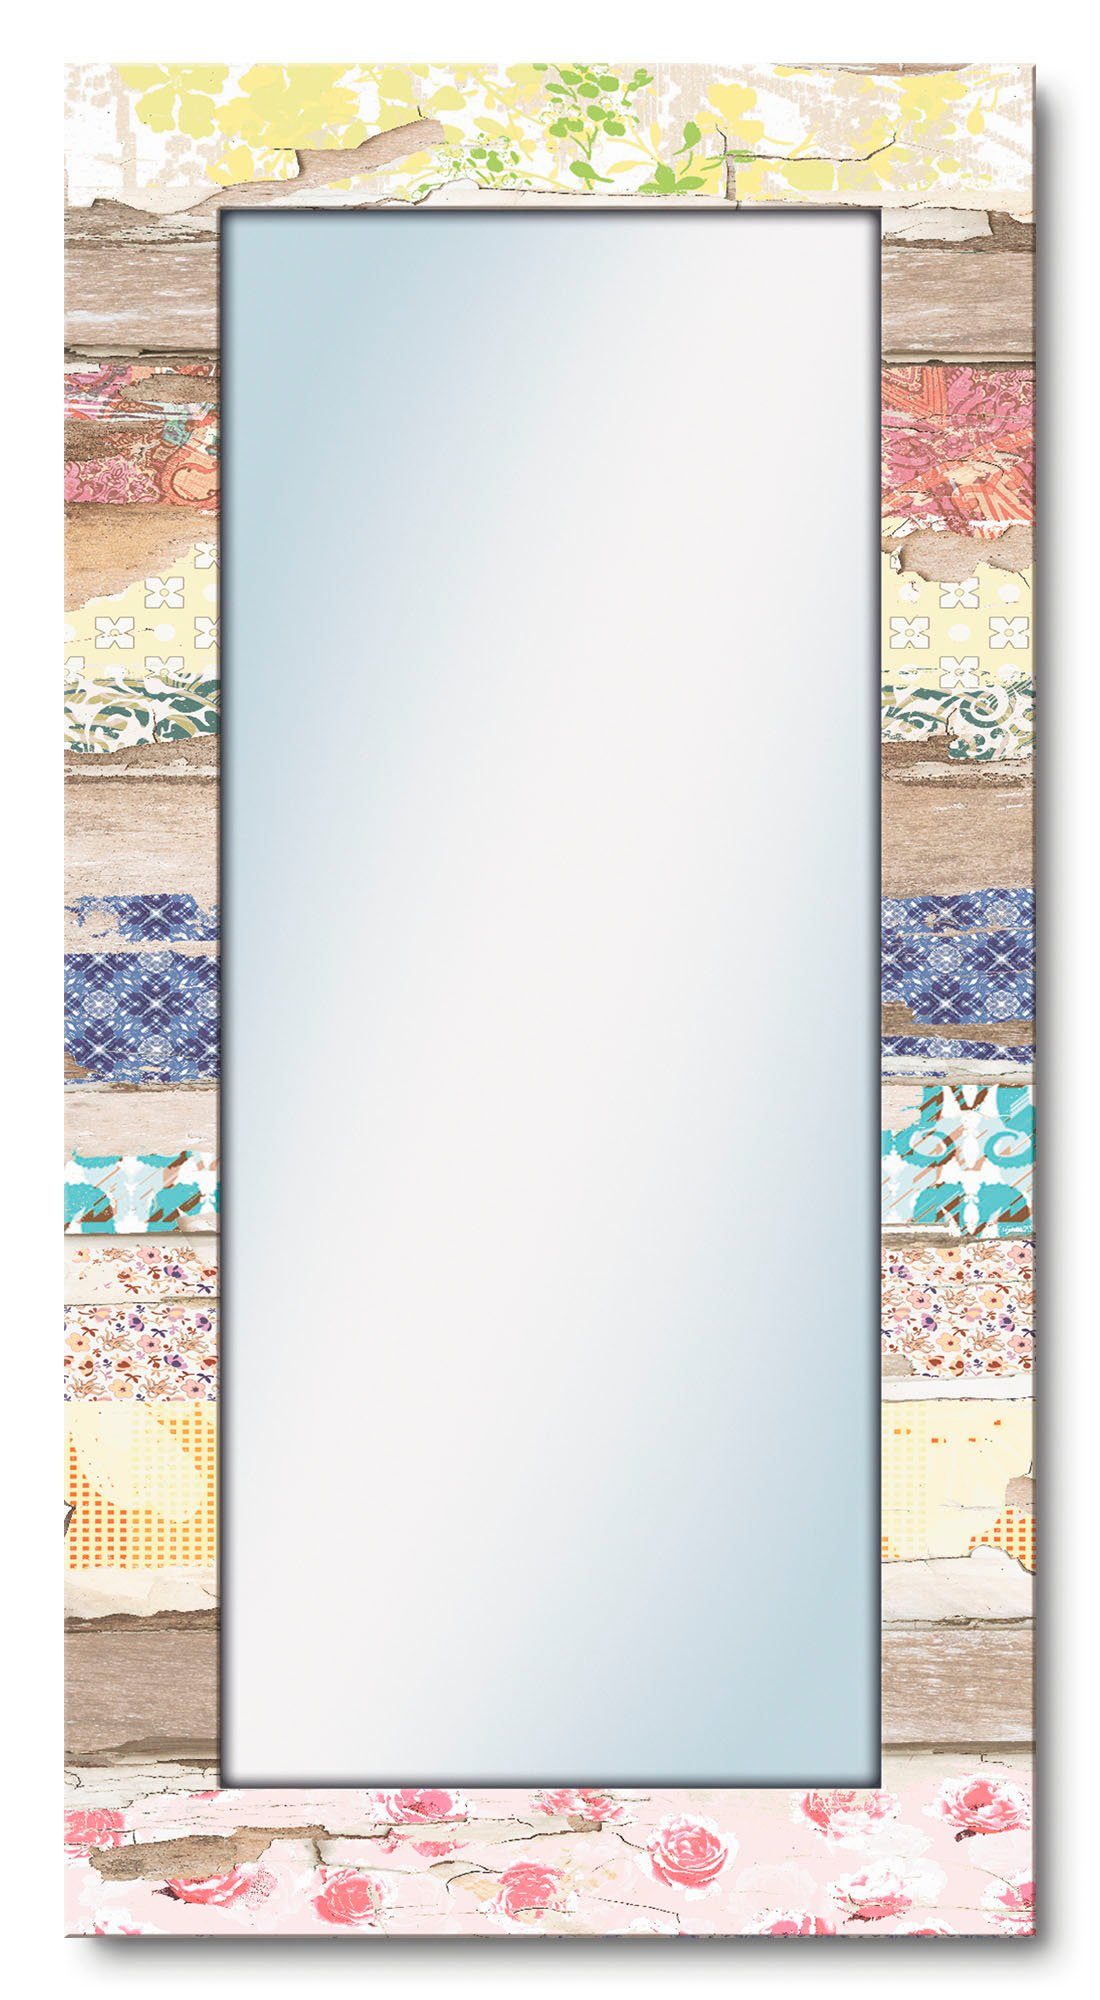 Artland Dekospiegel Verschiedene Muster auf modern Holz, mit Wanspiegel gerahmter Ganzkörperspiegel, Motivrahmen